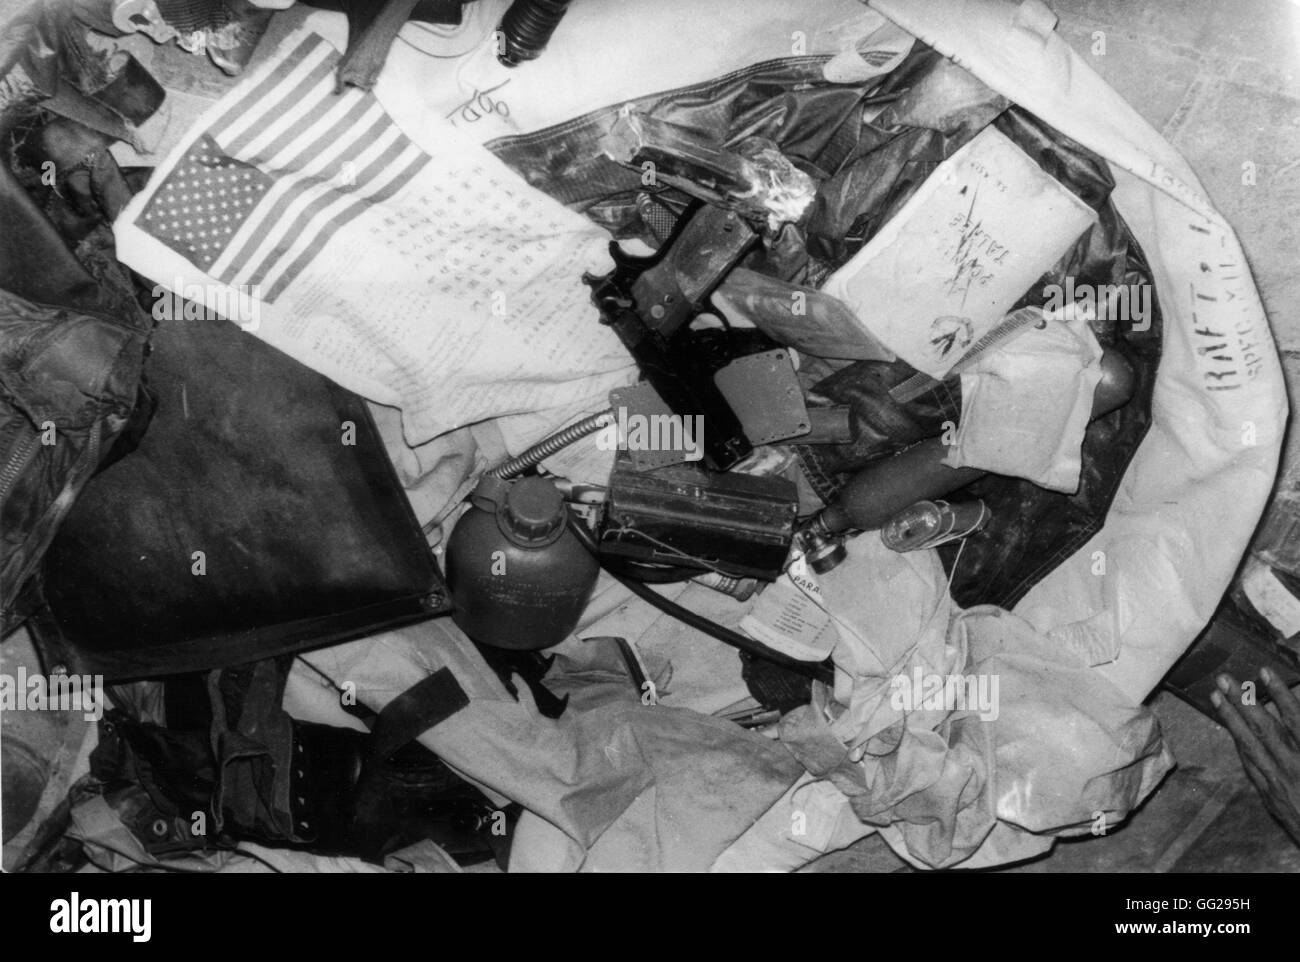 American pilote catturato, apparecchiature ha trovato con lui 1966 Guerra del Vietnam Foto Stock